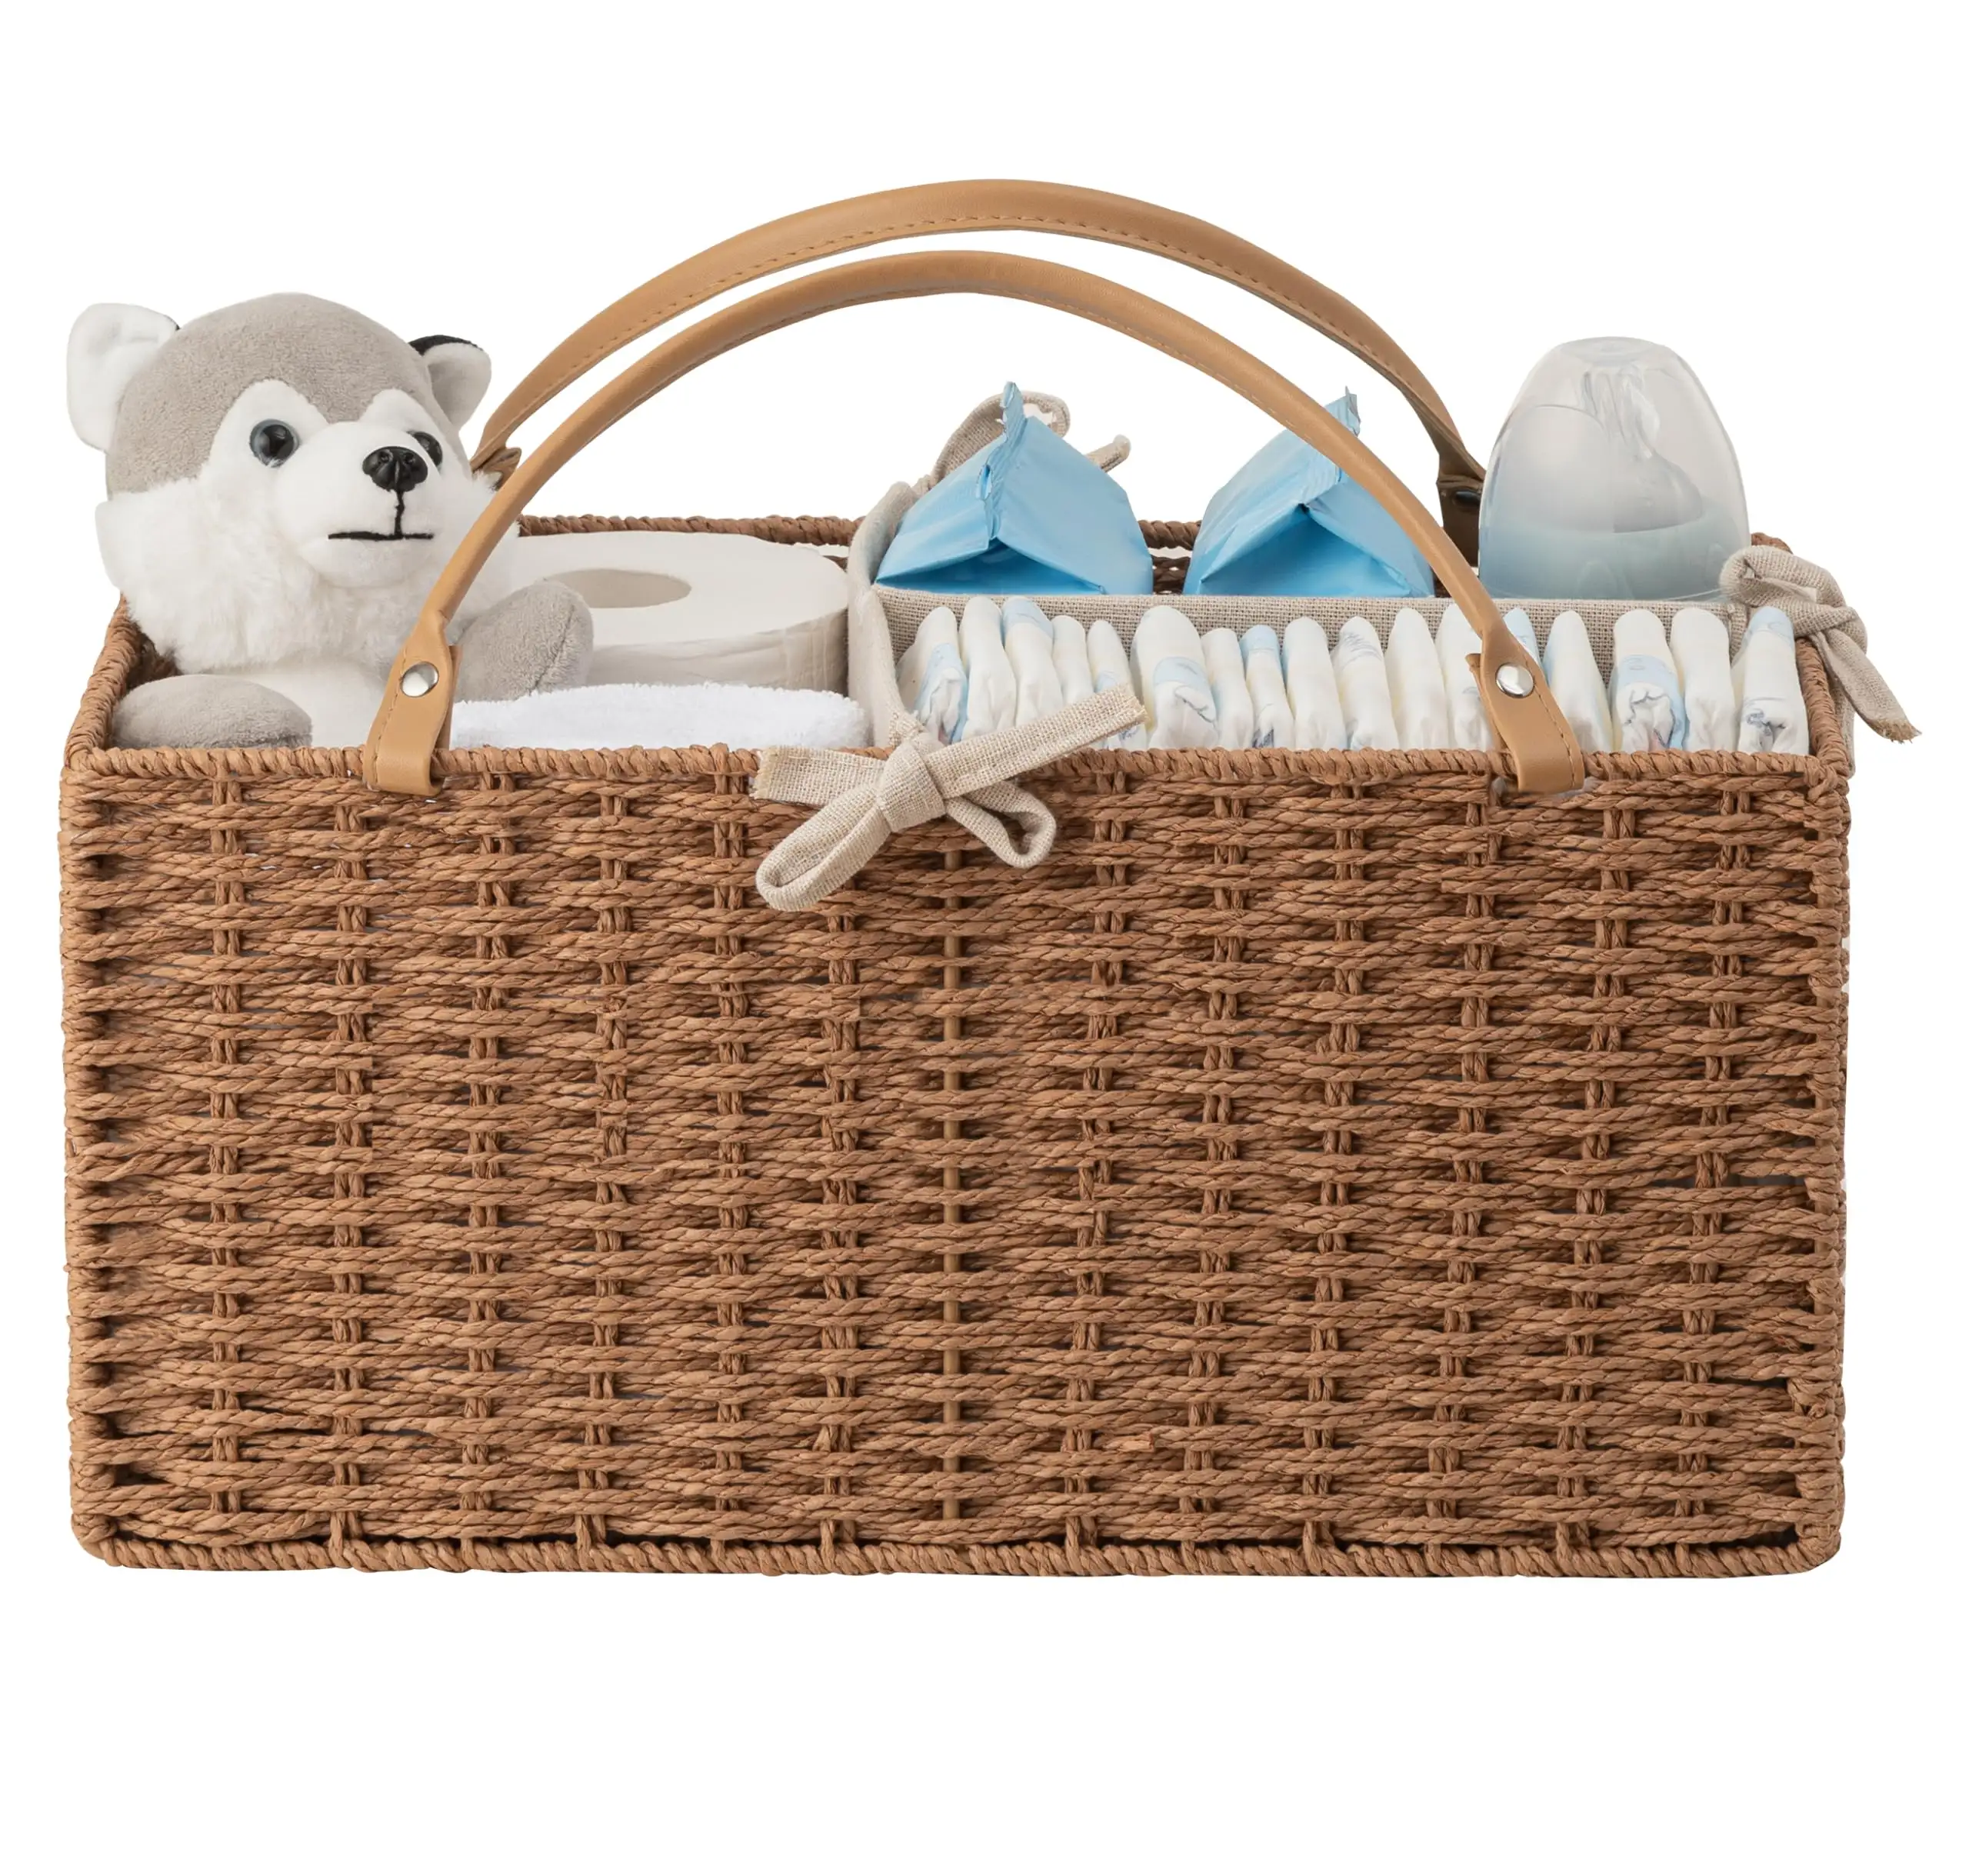 Baby Diaper Caddy Organizer Paper Rope Storage Baskets Nursery Bin with Removable Divider Newborn Essentials Gift